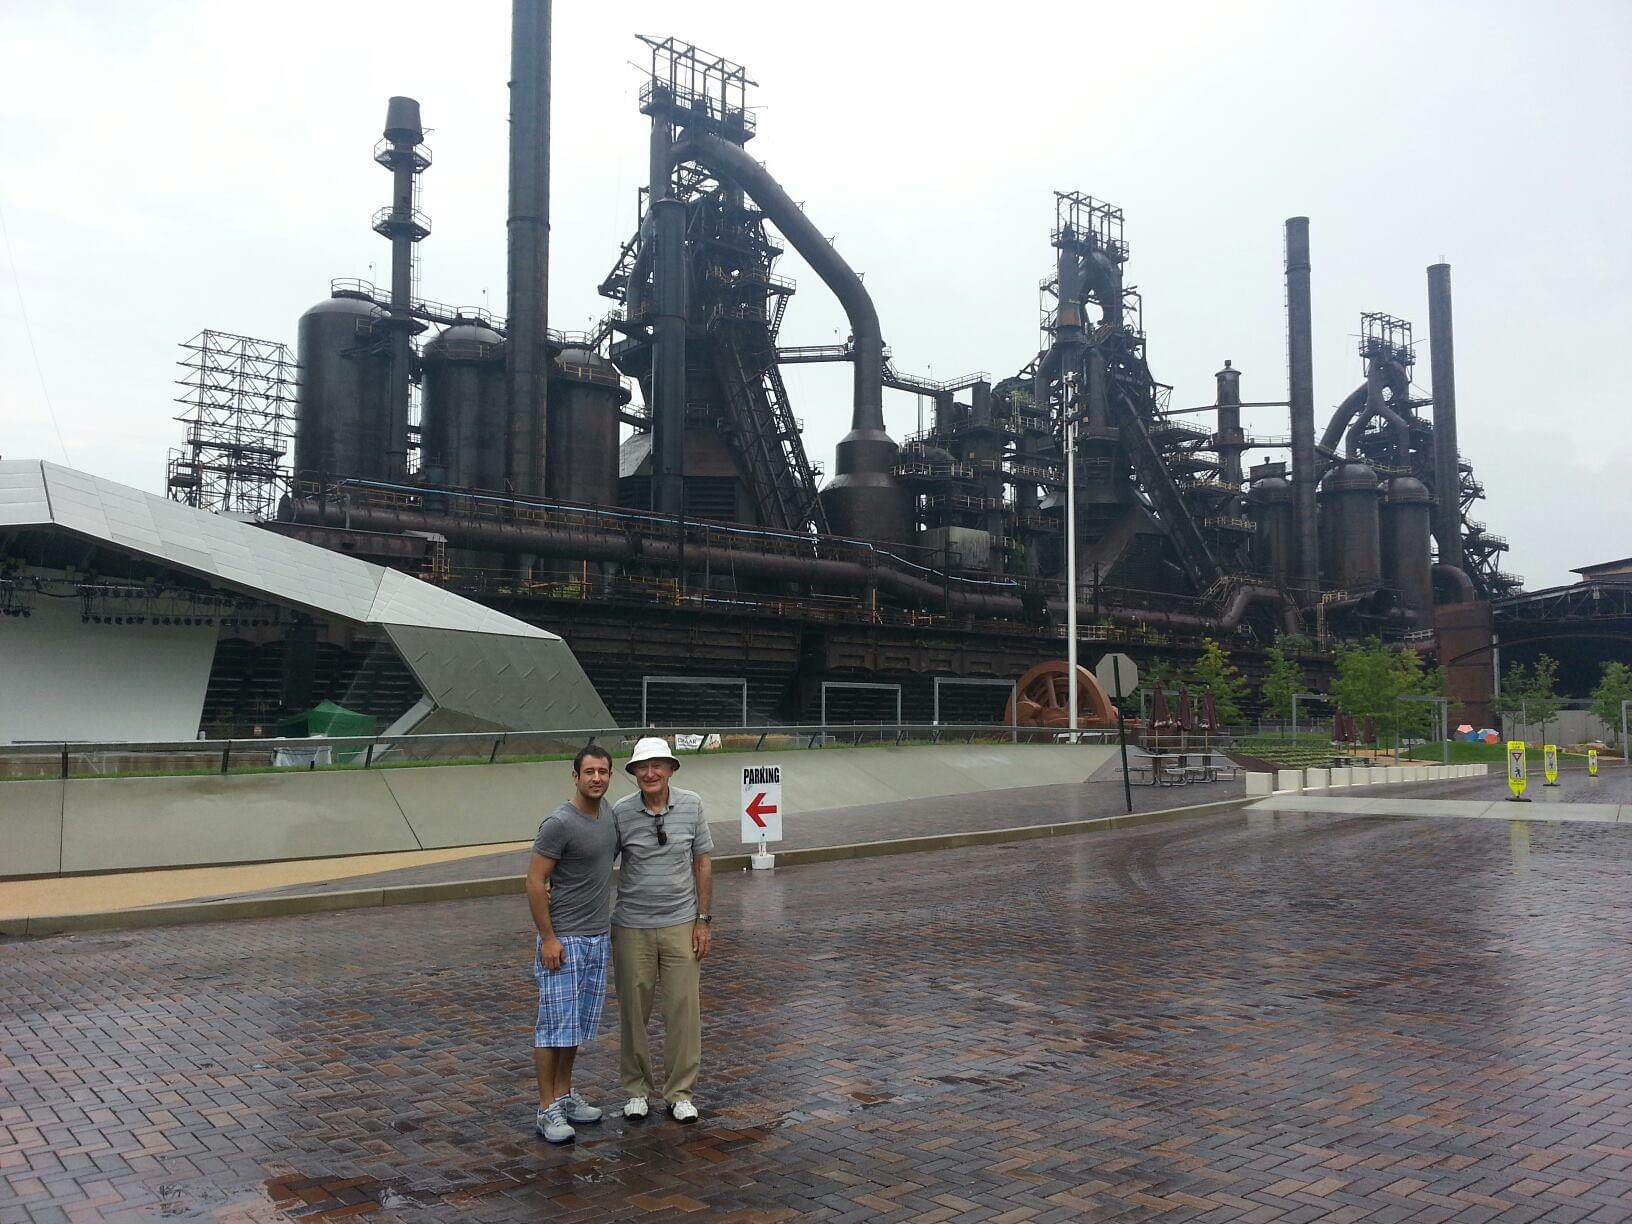 Steve and Grandpa at the Steel Stacks in Bethlehem in 2013